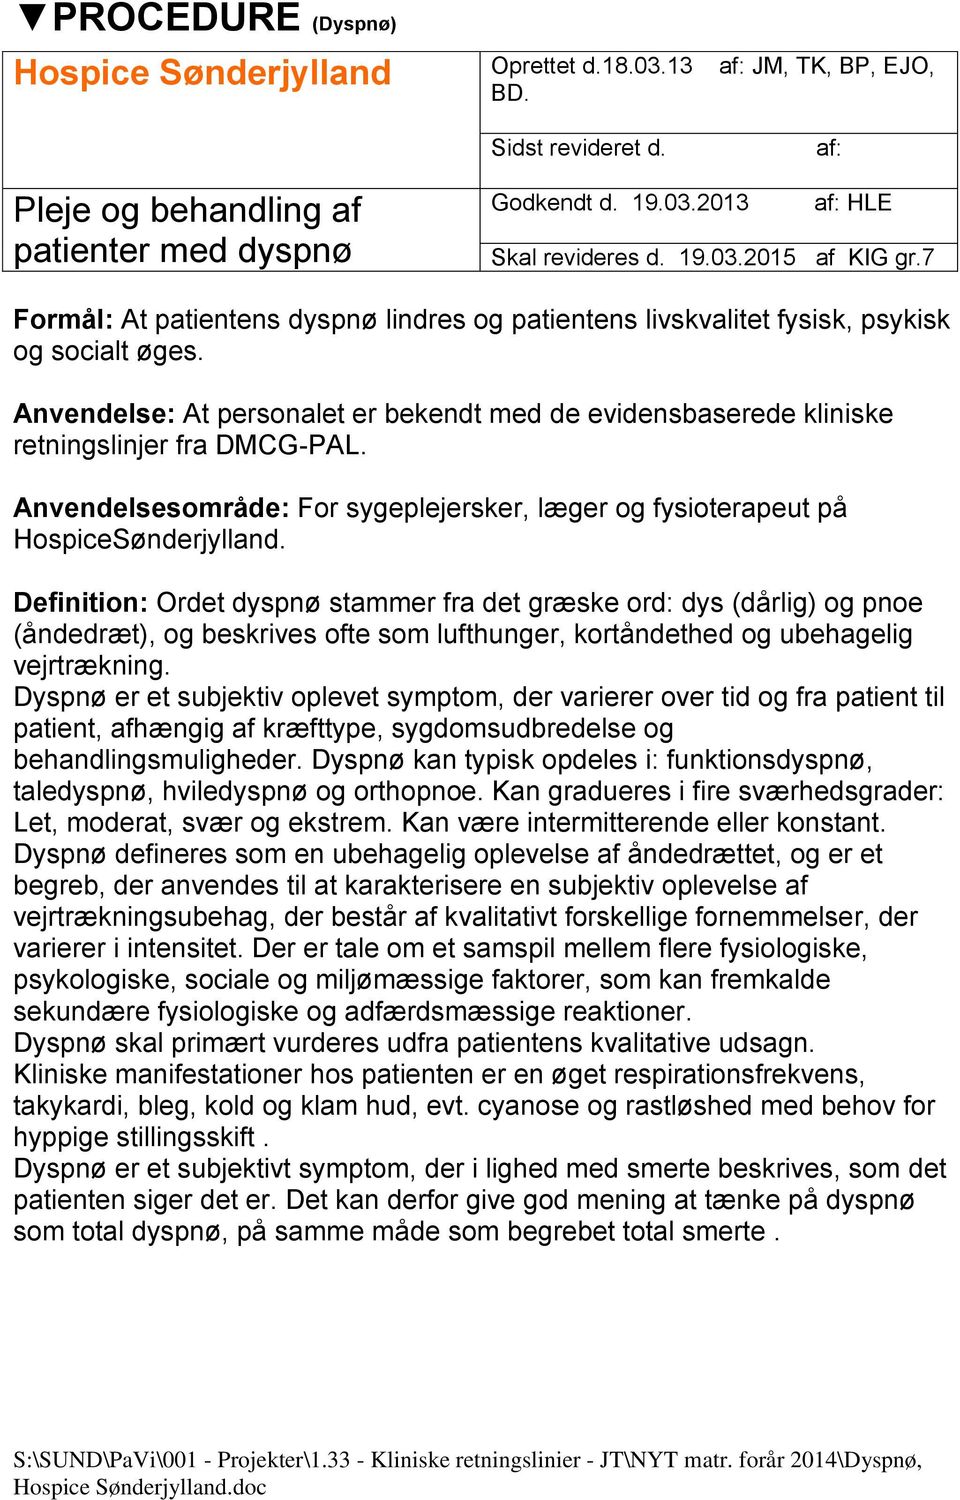 Anvendelsesområde: For sygeplejersker, læger og fysioterapeut på HospiceSønderjylland.